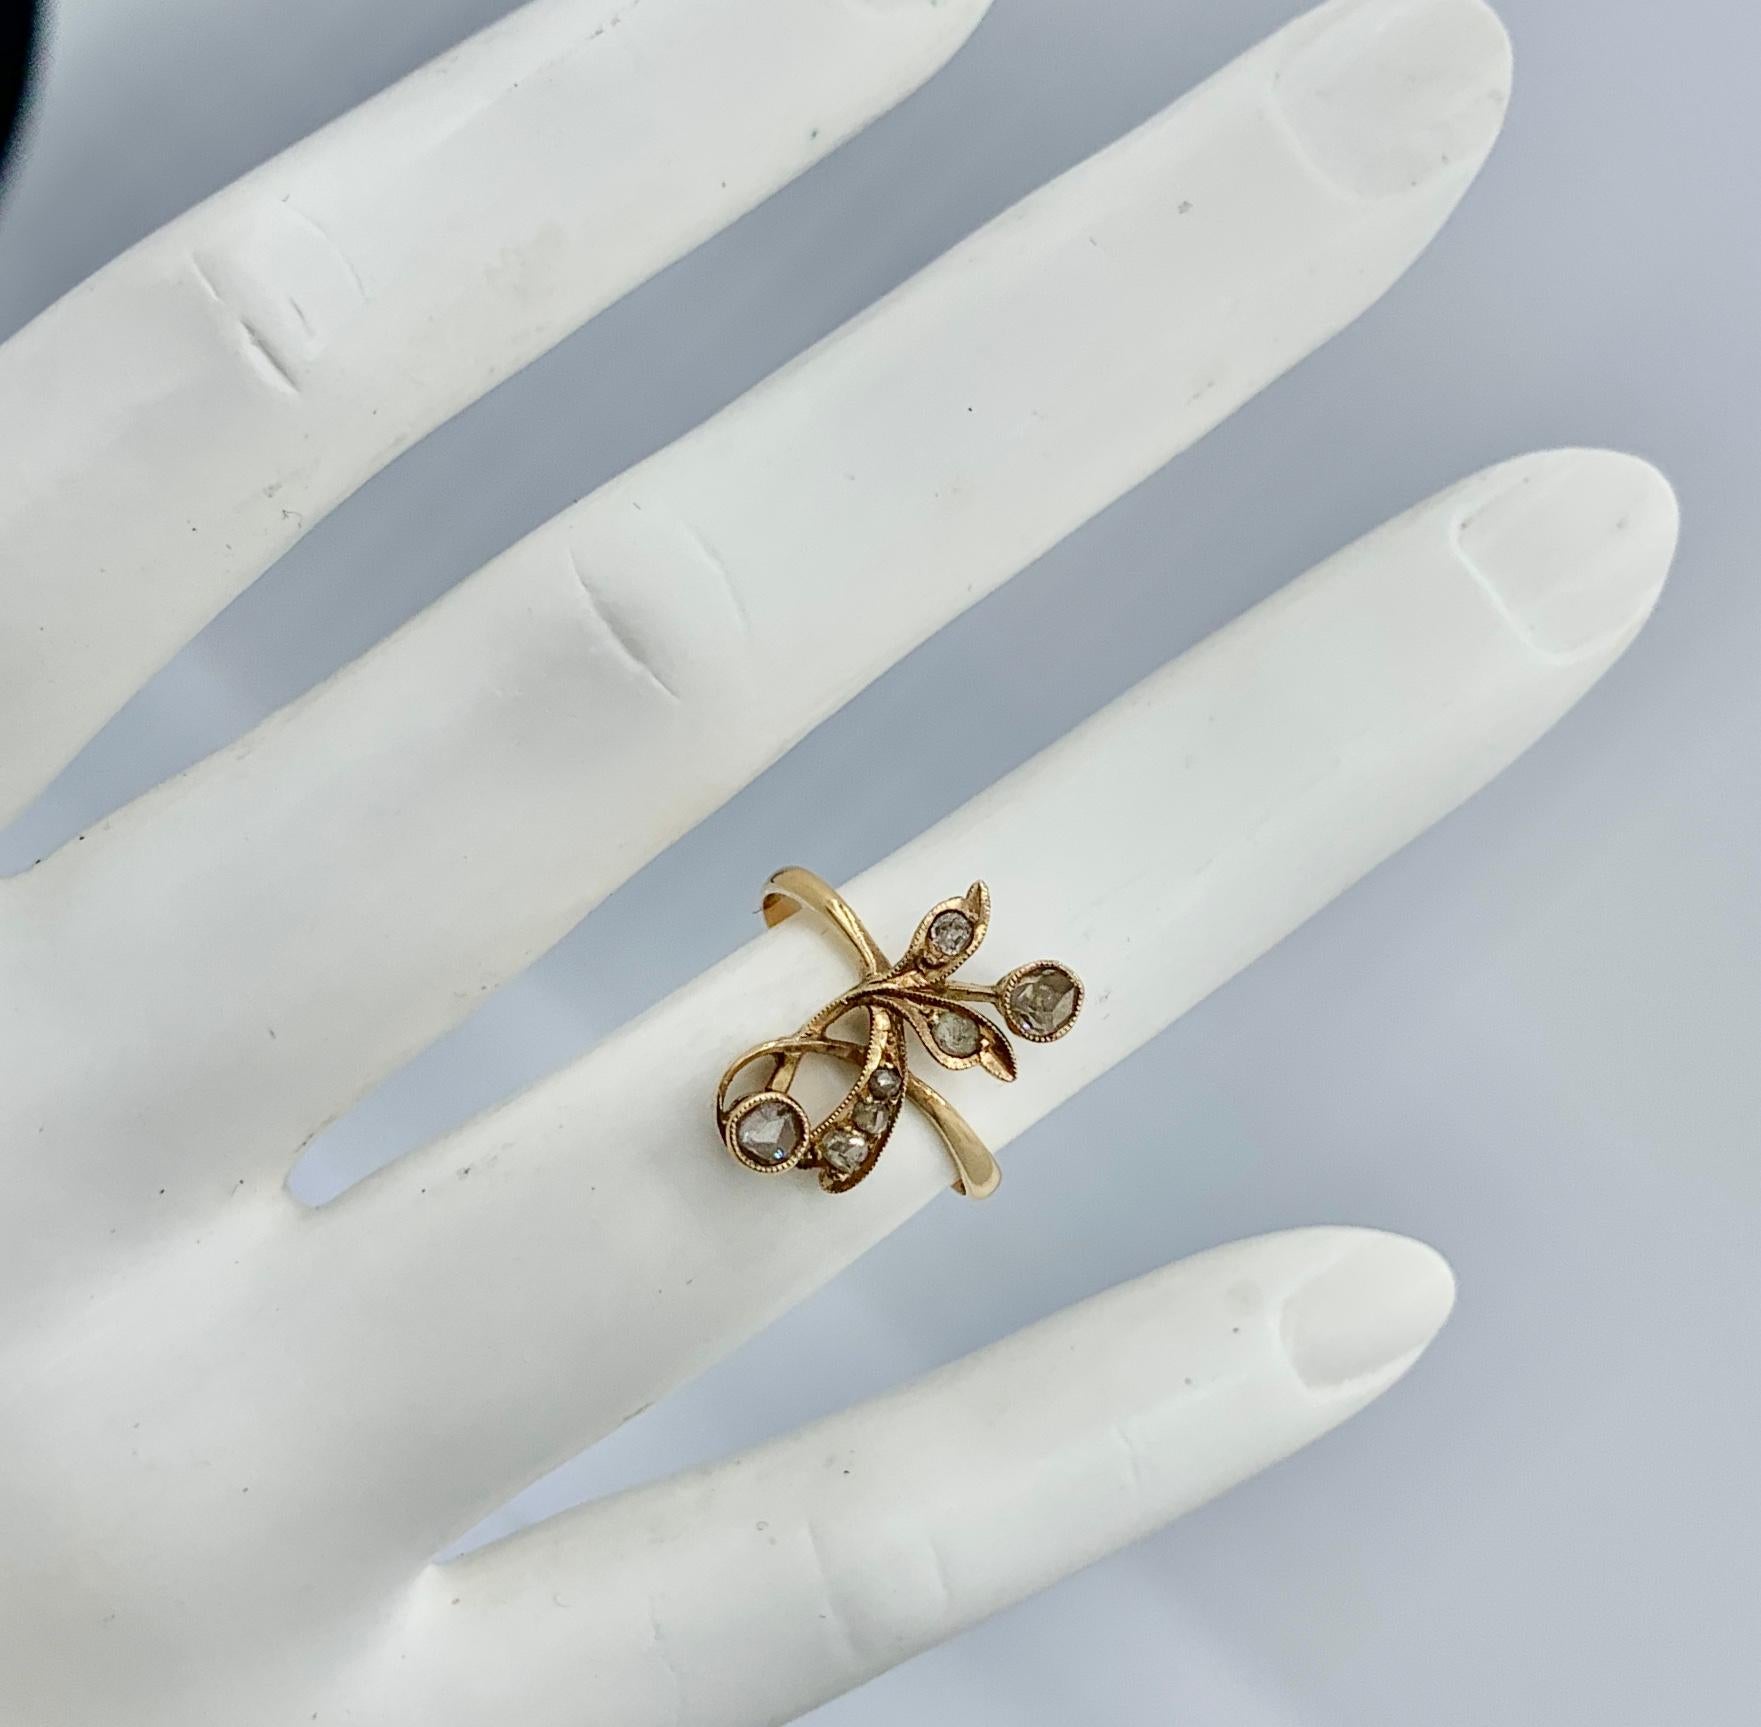 Dies ist eine außergewöhnliche antike Art Nouveau, Belle Epoque Rose Cut Diamond Ring in einem atemberaubenden und sehr seltenen Blumenmotiv von großer Schönheit in 18 Karat Gold.   Die Diamanten im Rosenschliff sind in ein zartes, romantisches